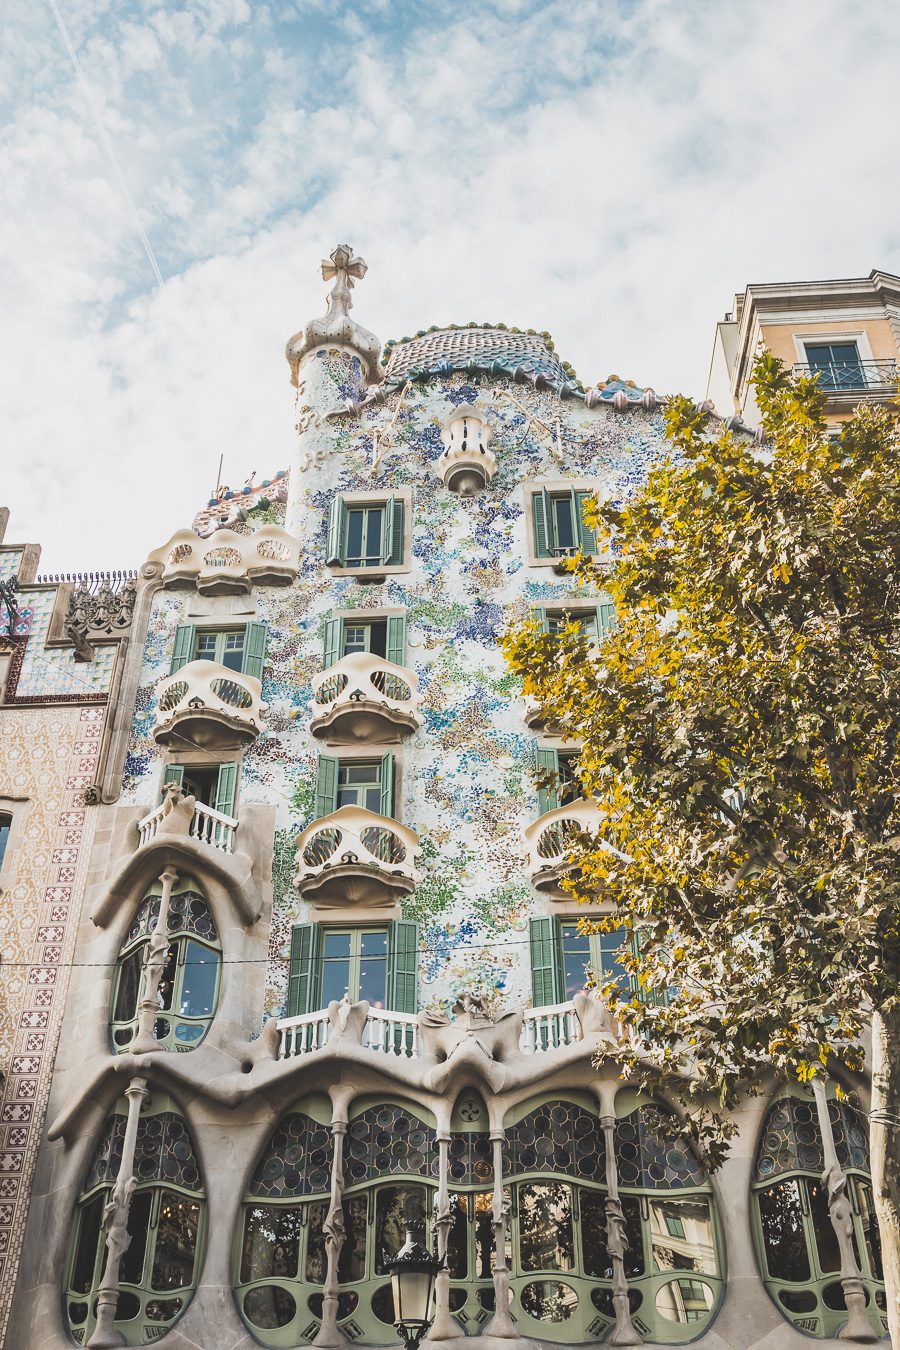 Découvrez la magie et le romantisme de Barcelone en un seul week-end en explorant la culture vibrante de la ville, son art captivant et sa délicieuse cuisine. Des plages ensoleillées à l'architecture inspirée de Gaudi, Barcelone propose de nombreuses activités pour tous les types d'aventuriers. Que vous recherchiez une immersion culturelle ou une retraite décontractée, un week-end à Barcelone promet un avant-goût de la culture espagnole que vous n'oublierez pas de sitôt. Barcelone week-end 